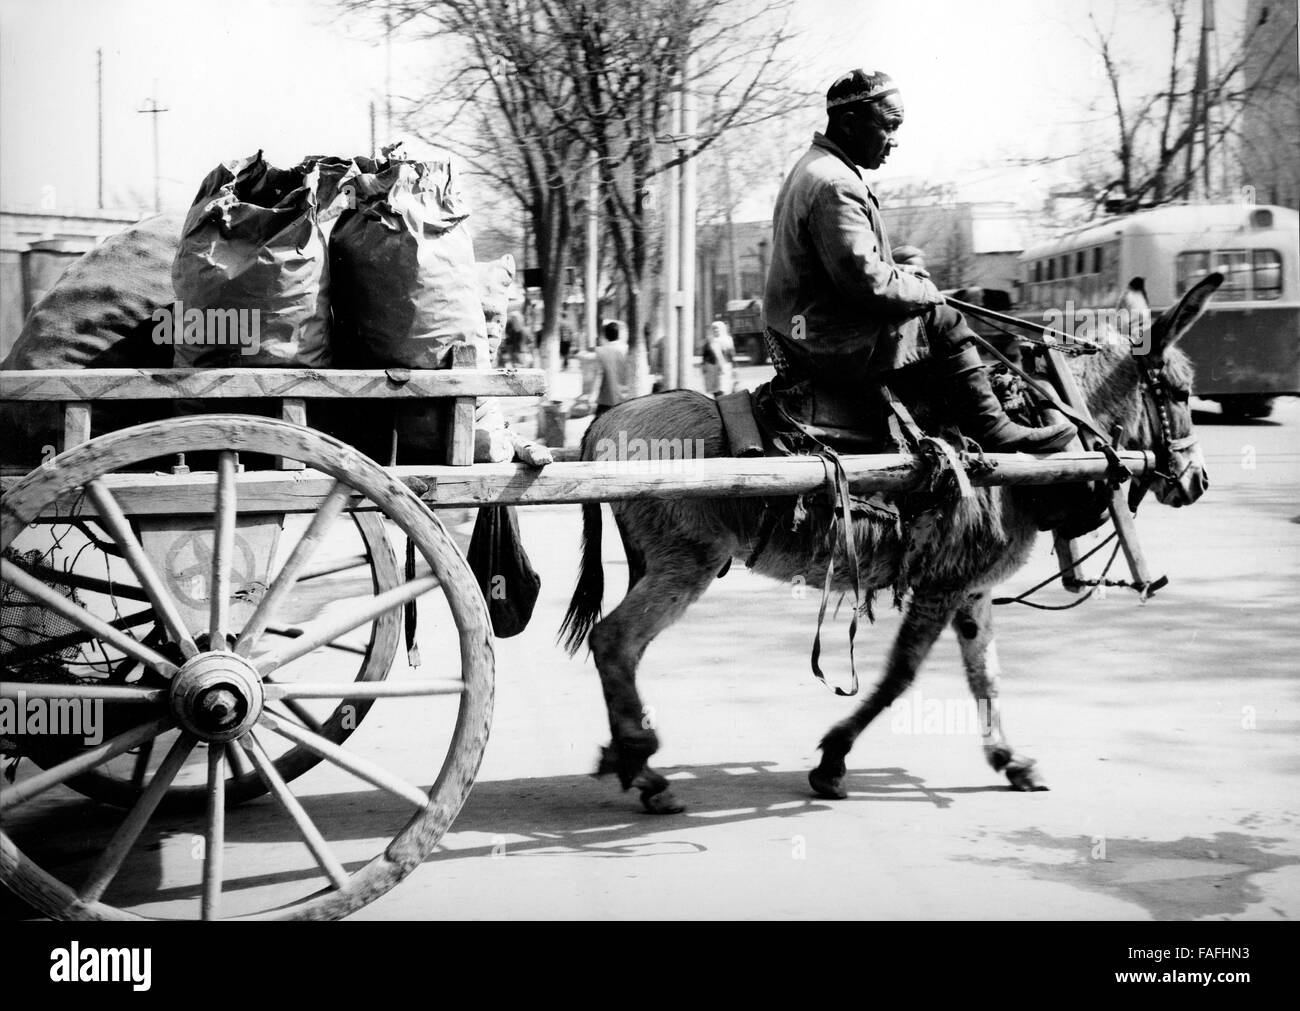 Ein Mann auf seinem Eselskarren à Samarcande en Ouzbékistan, Sowjetunion 1970 er Jahre. Un homme sur son âne dans les rues de Samarkand, Ouzbékistan, Union soviétique, 1970. Banque D'Images